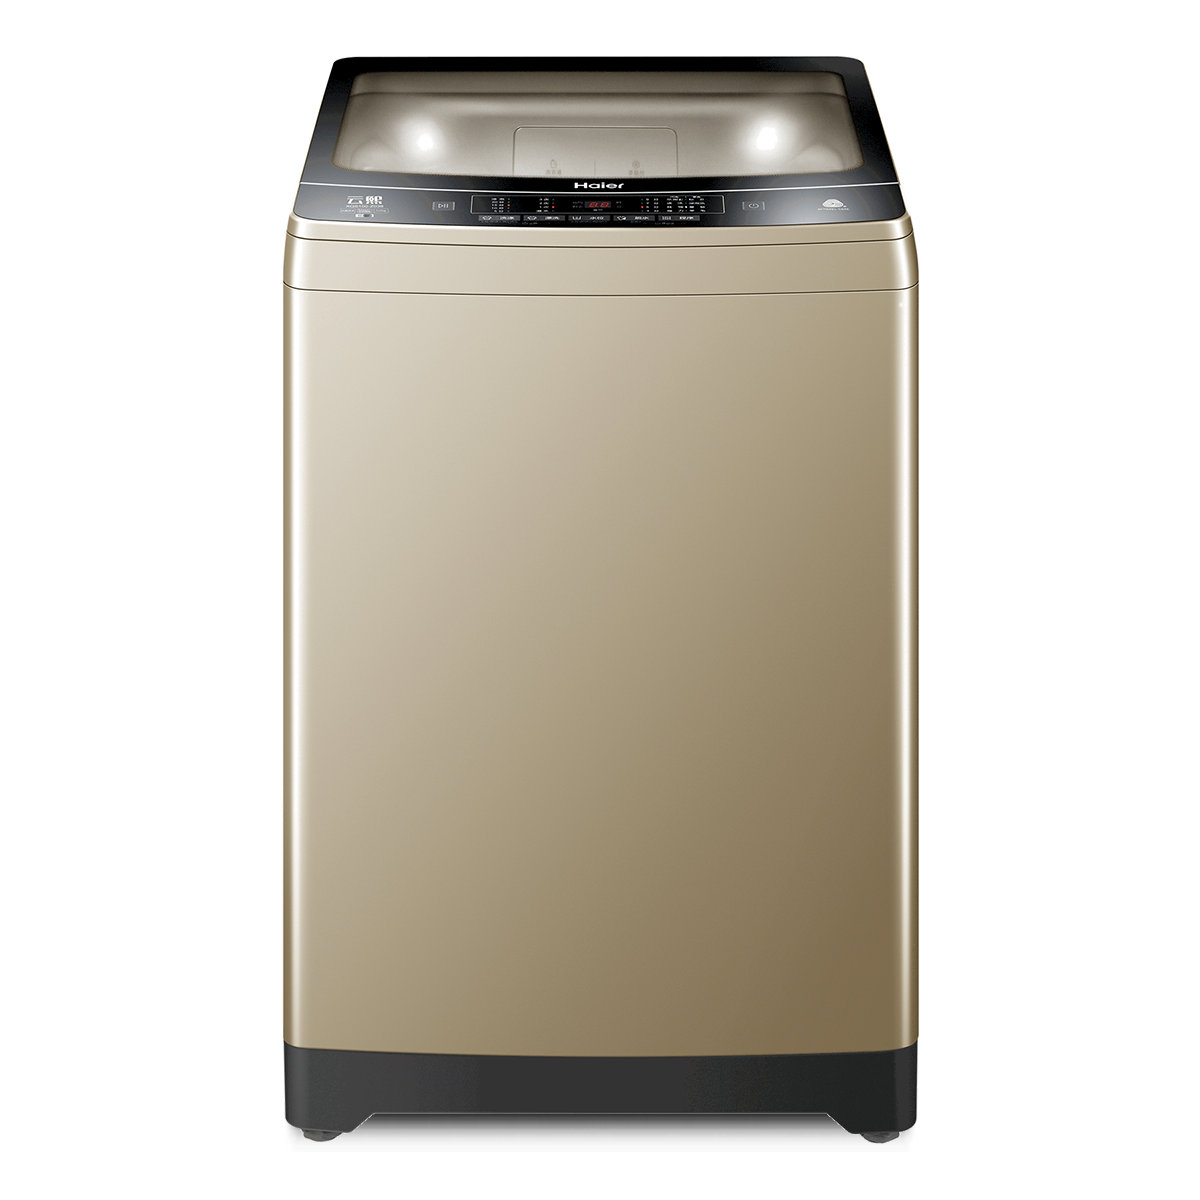 海尔Haier洗衣机 XQS100-Z038 说明书